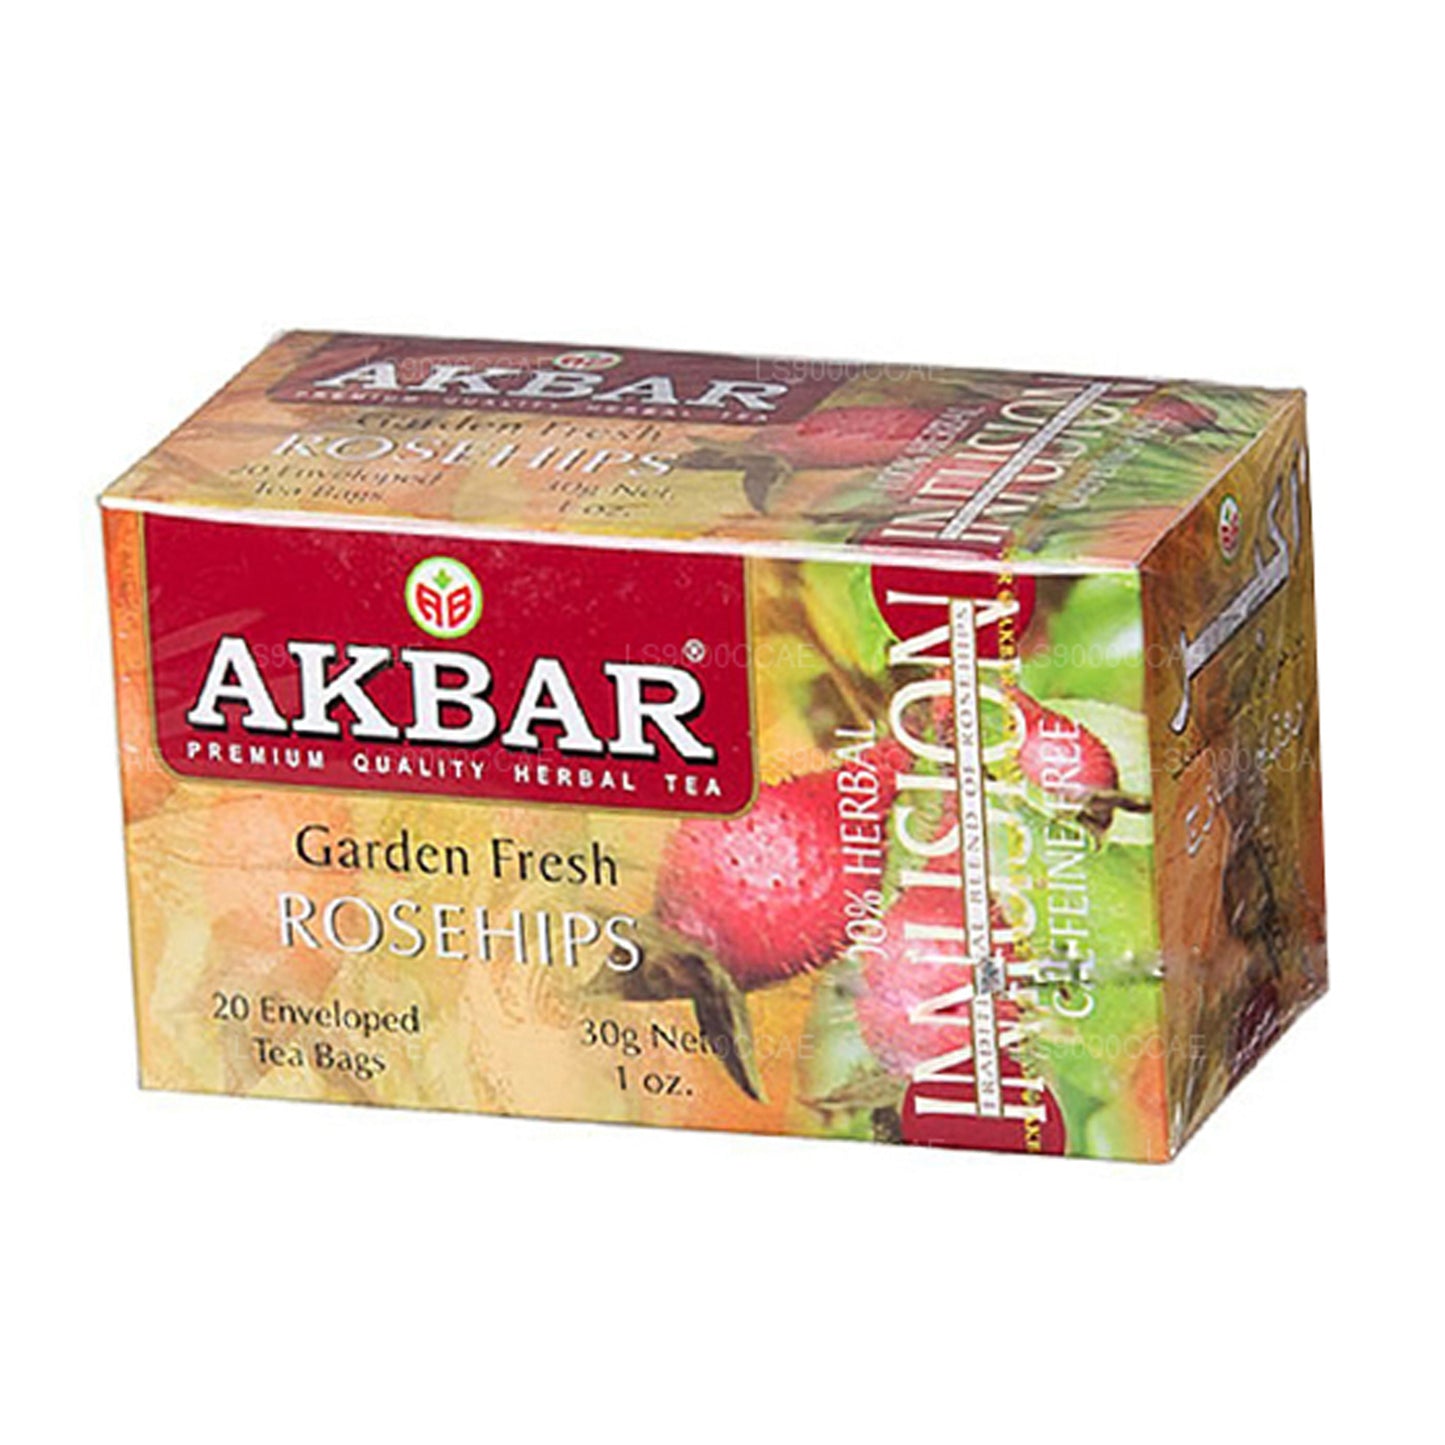 Akbar Garden Fresh Rosehips 20 Tea Bags (30g)